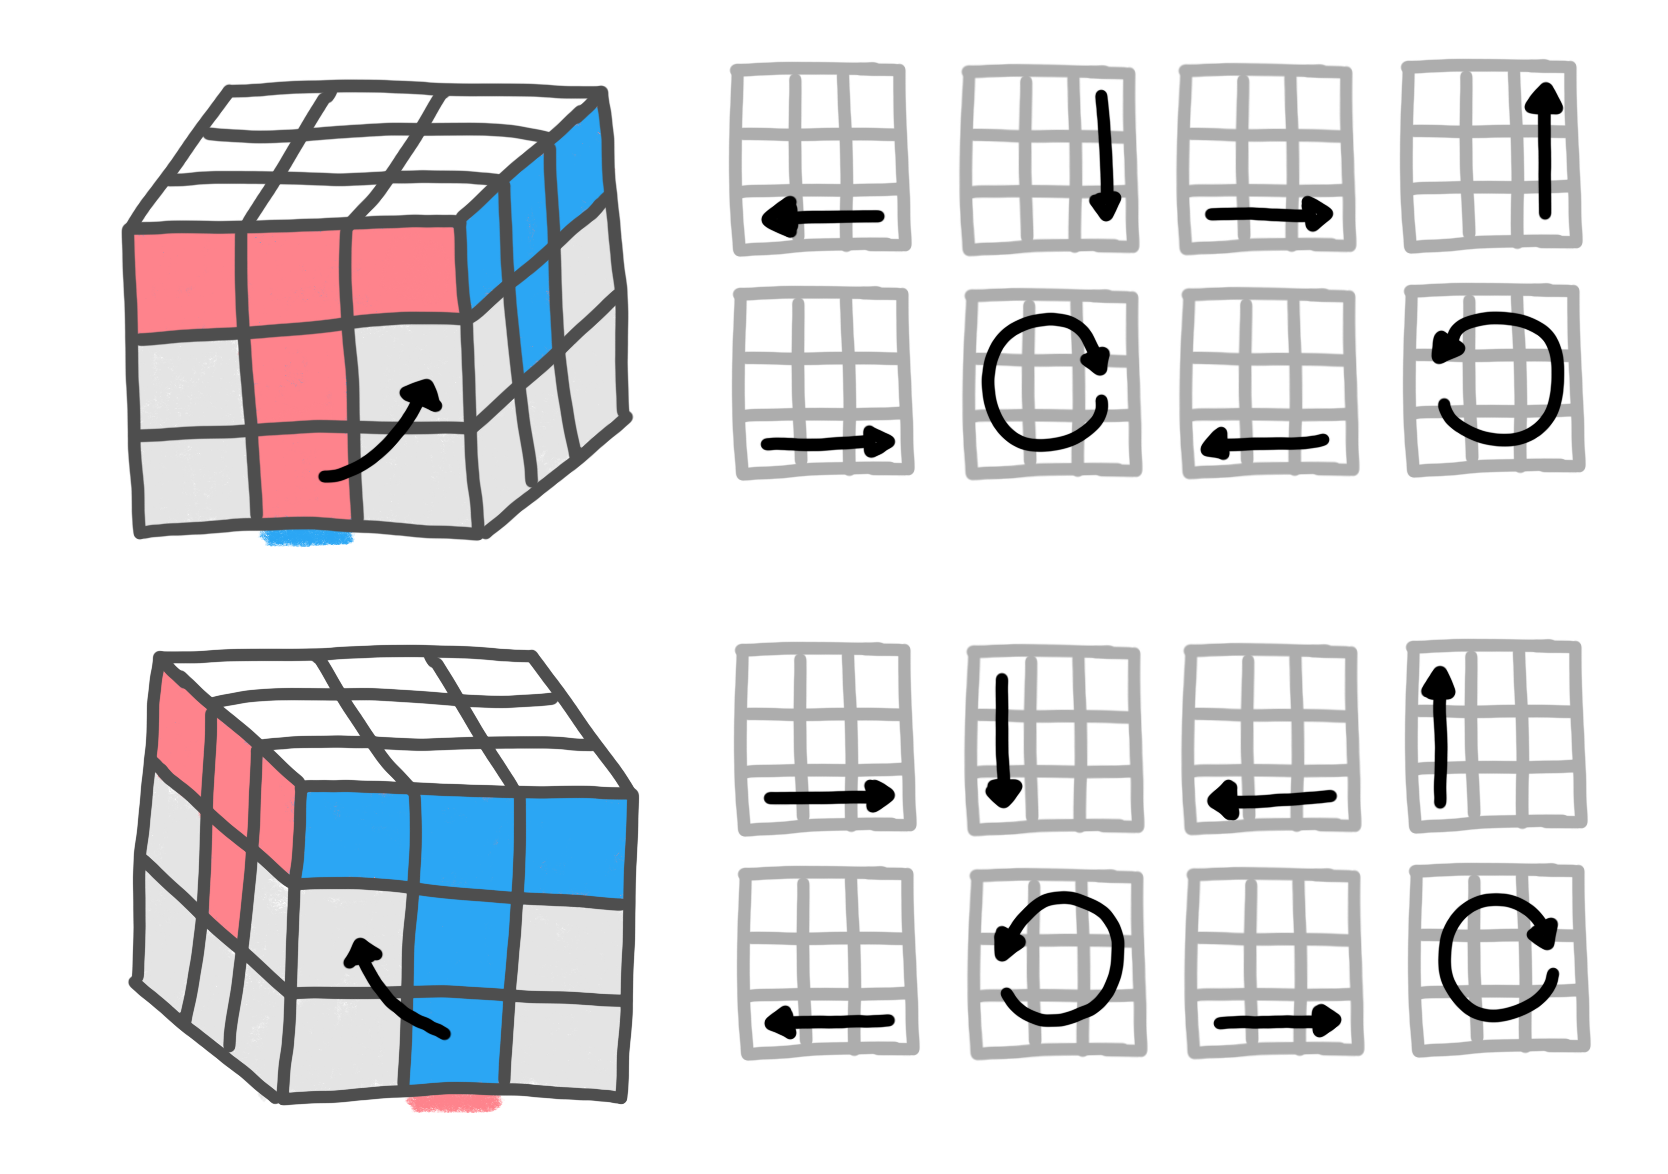 rubiks cube flip bottom middle